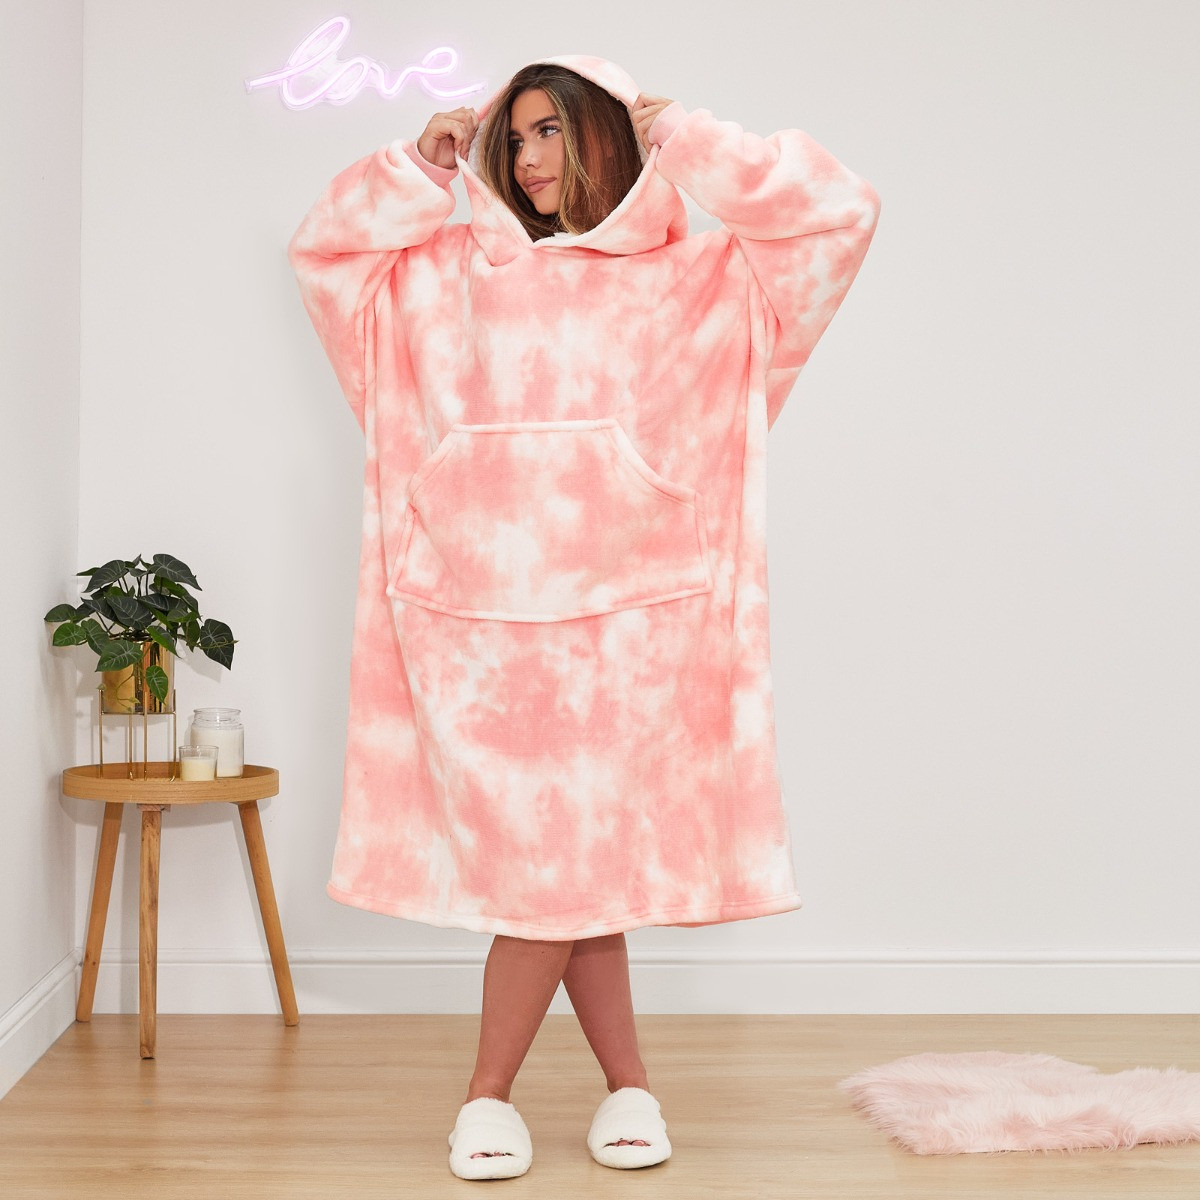 Dreamscene Extra Long Tie Dye Hoodie Blanket - Blush Pink>